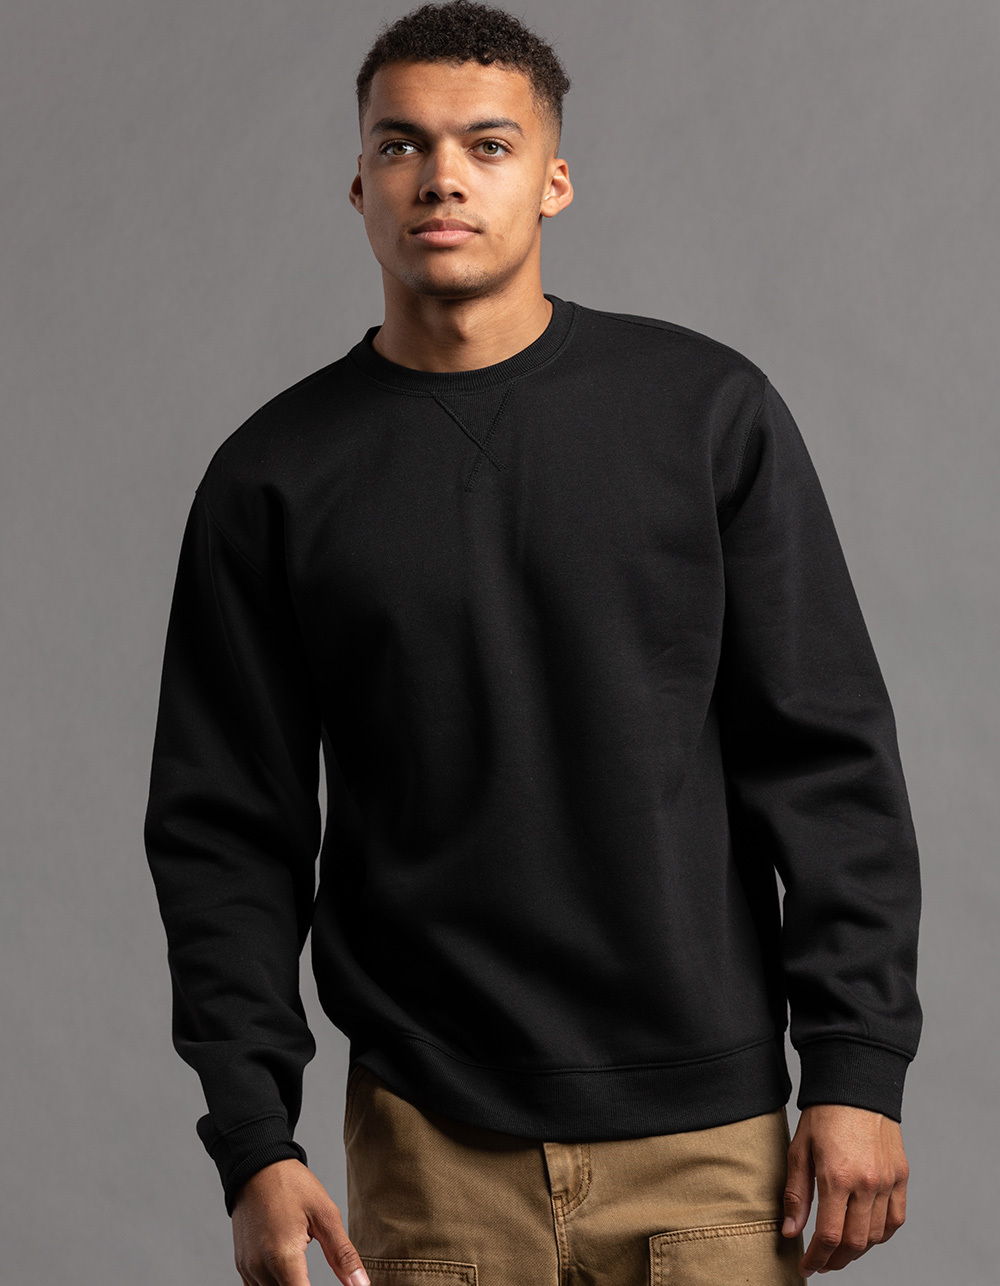 Men's Crewneck Fleece Sweater